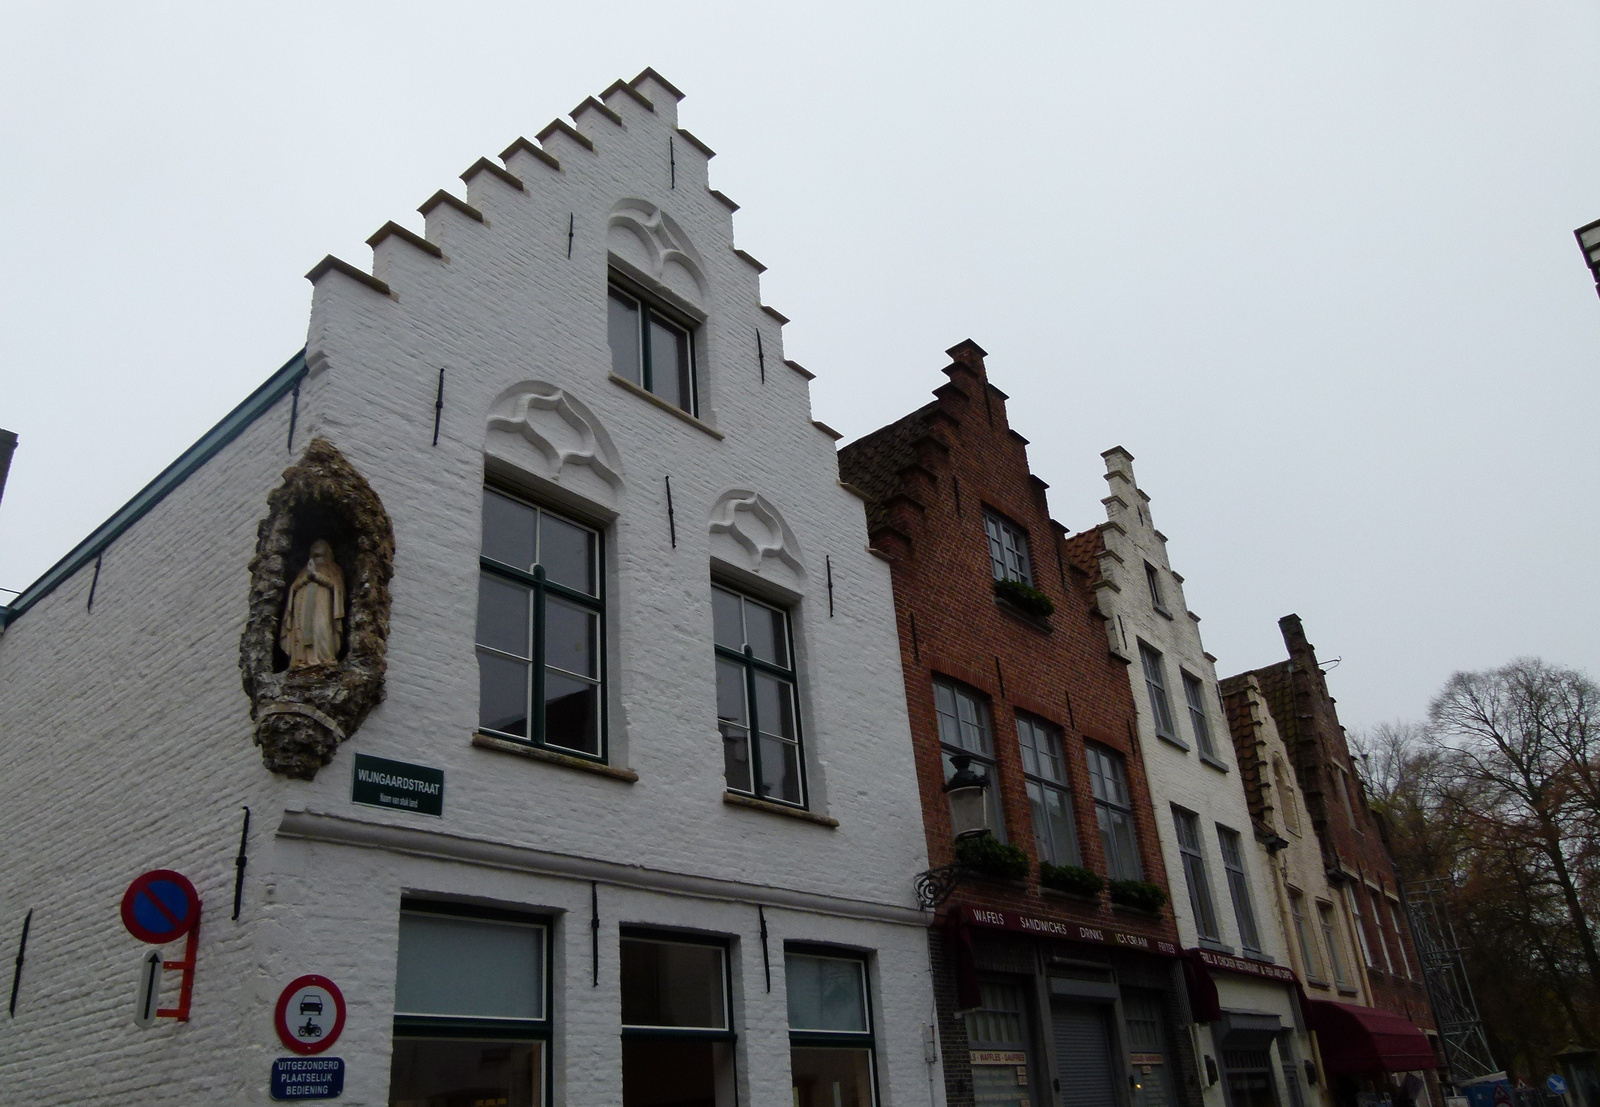 Brugge-i házak (P1280354)